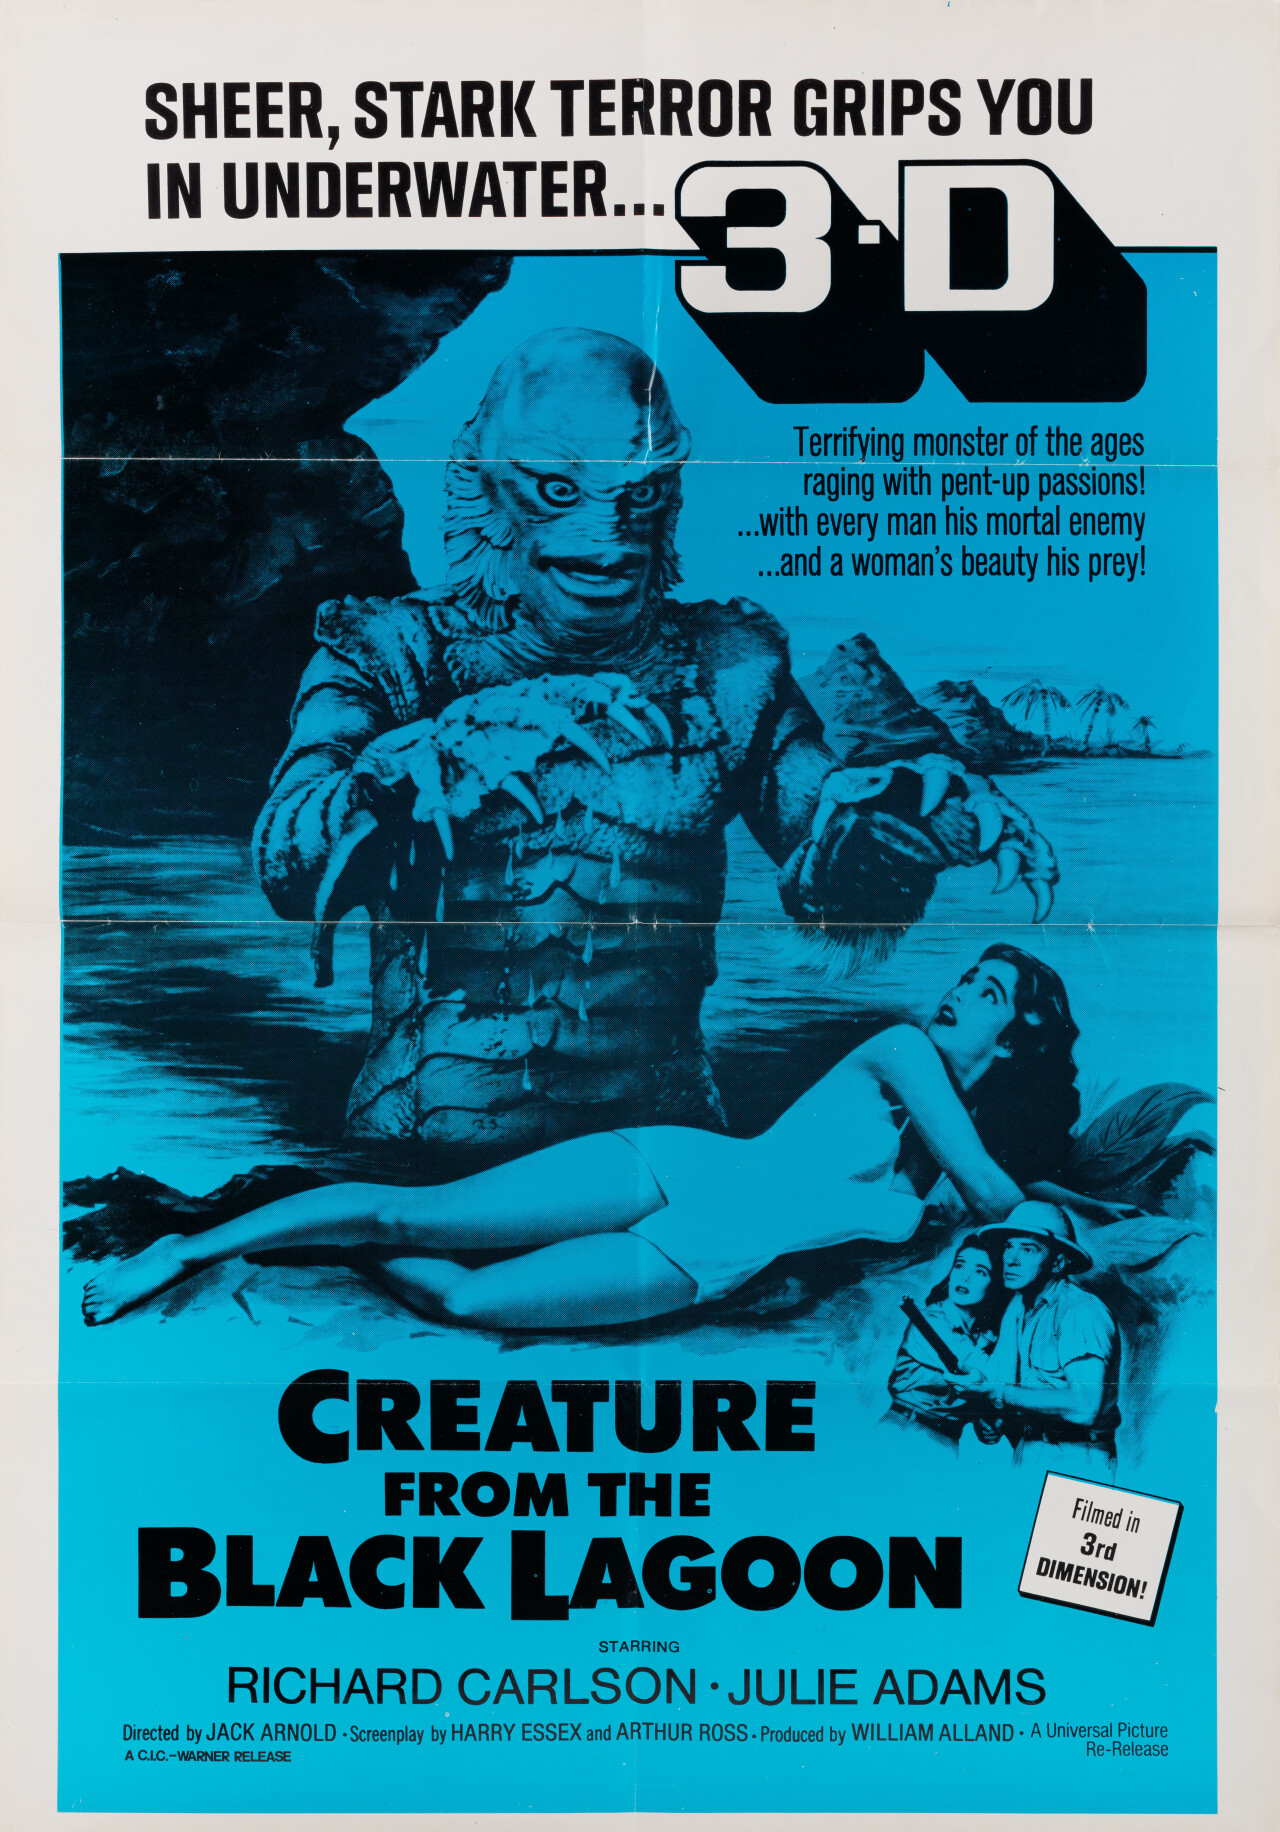 Тварь из Чёрной лагуны (Creature from the Black Lagoon, 1954), режиссёр Джек Арнольд, американский постер к фильму (монстры, 1972 год)